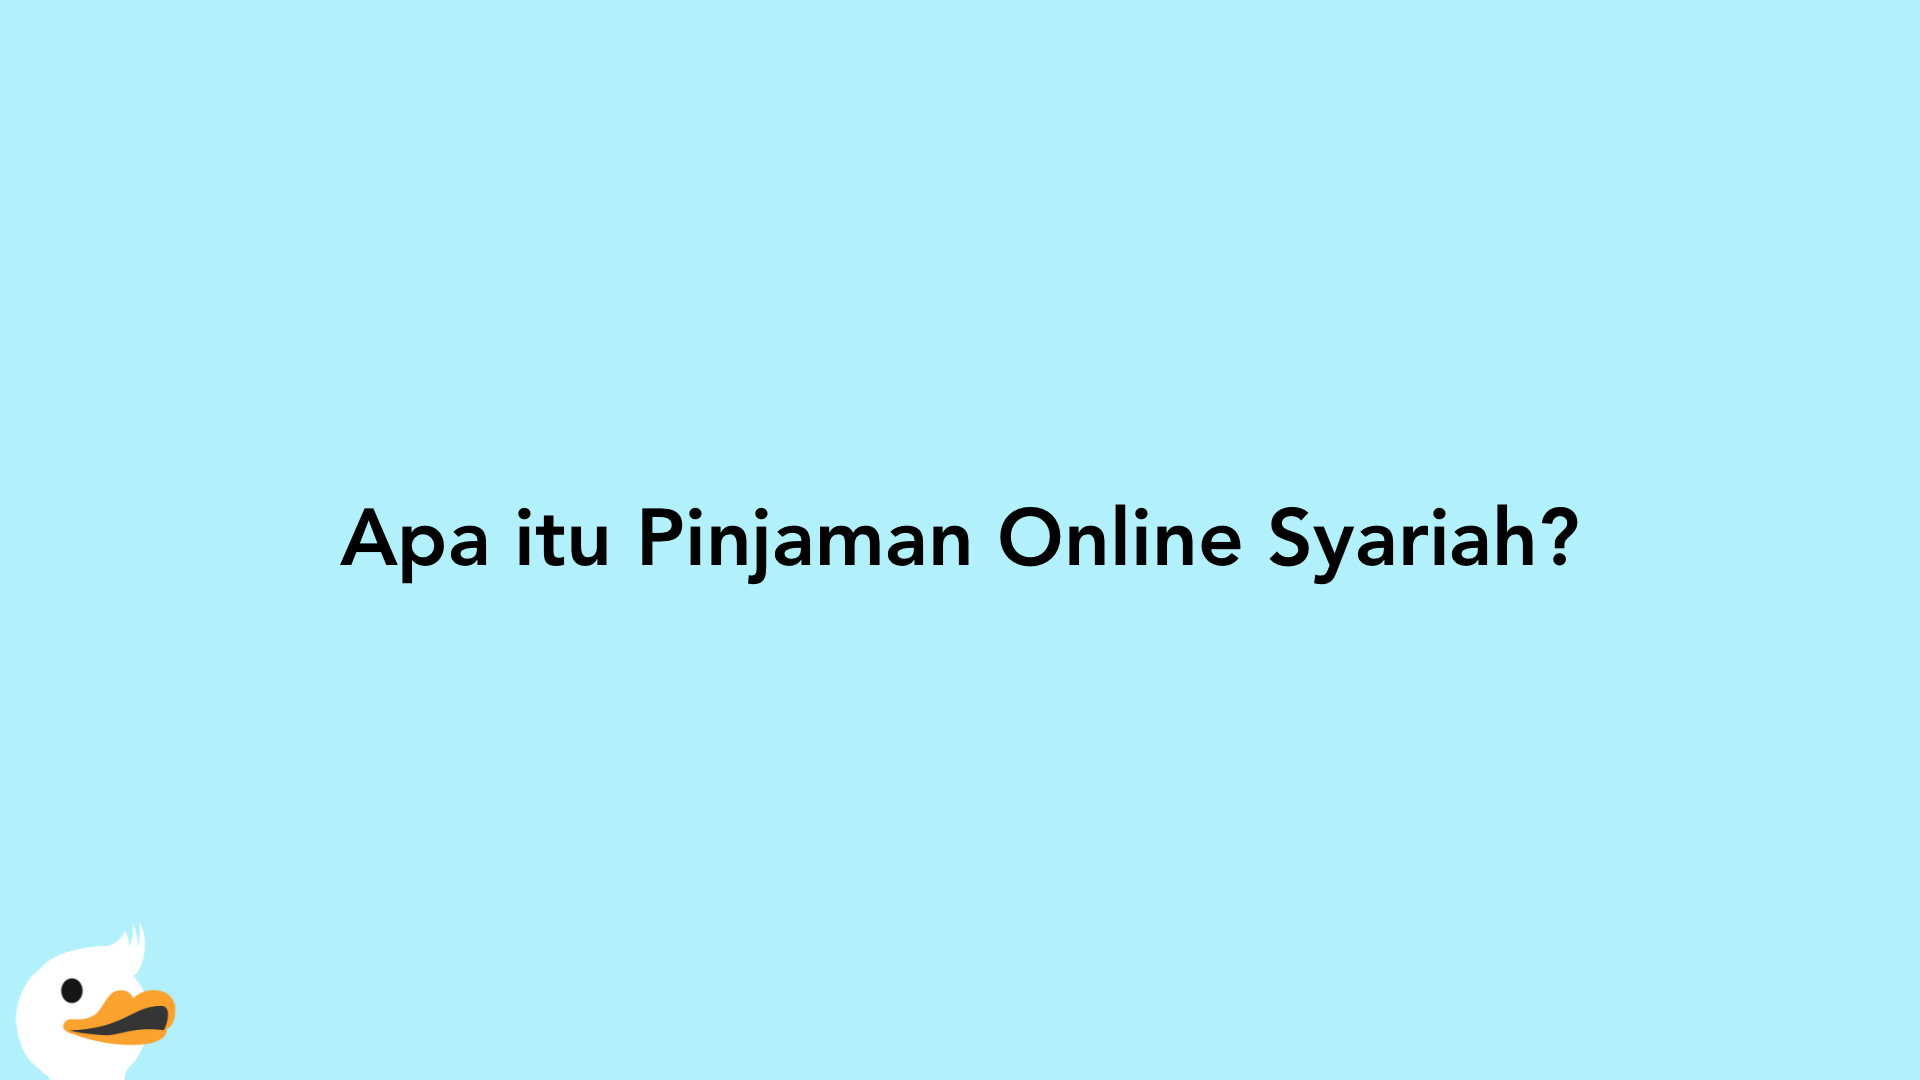 Apa itu Pinjaman Online Syariah?